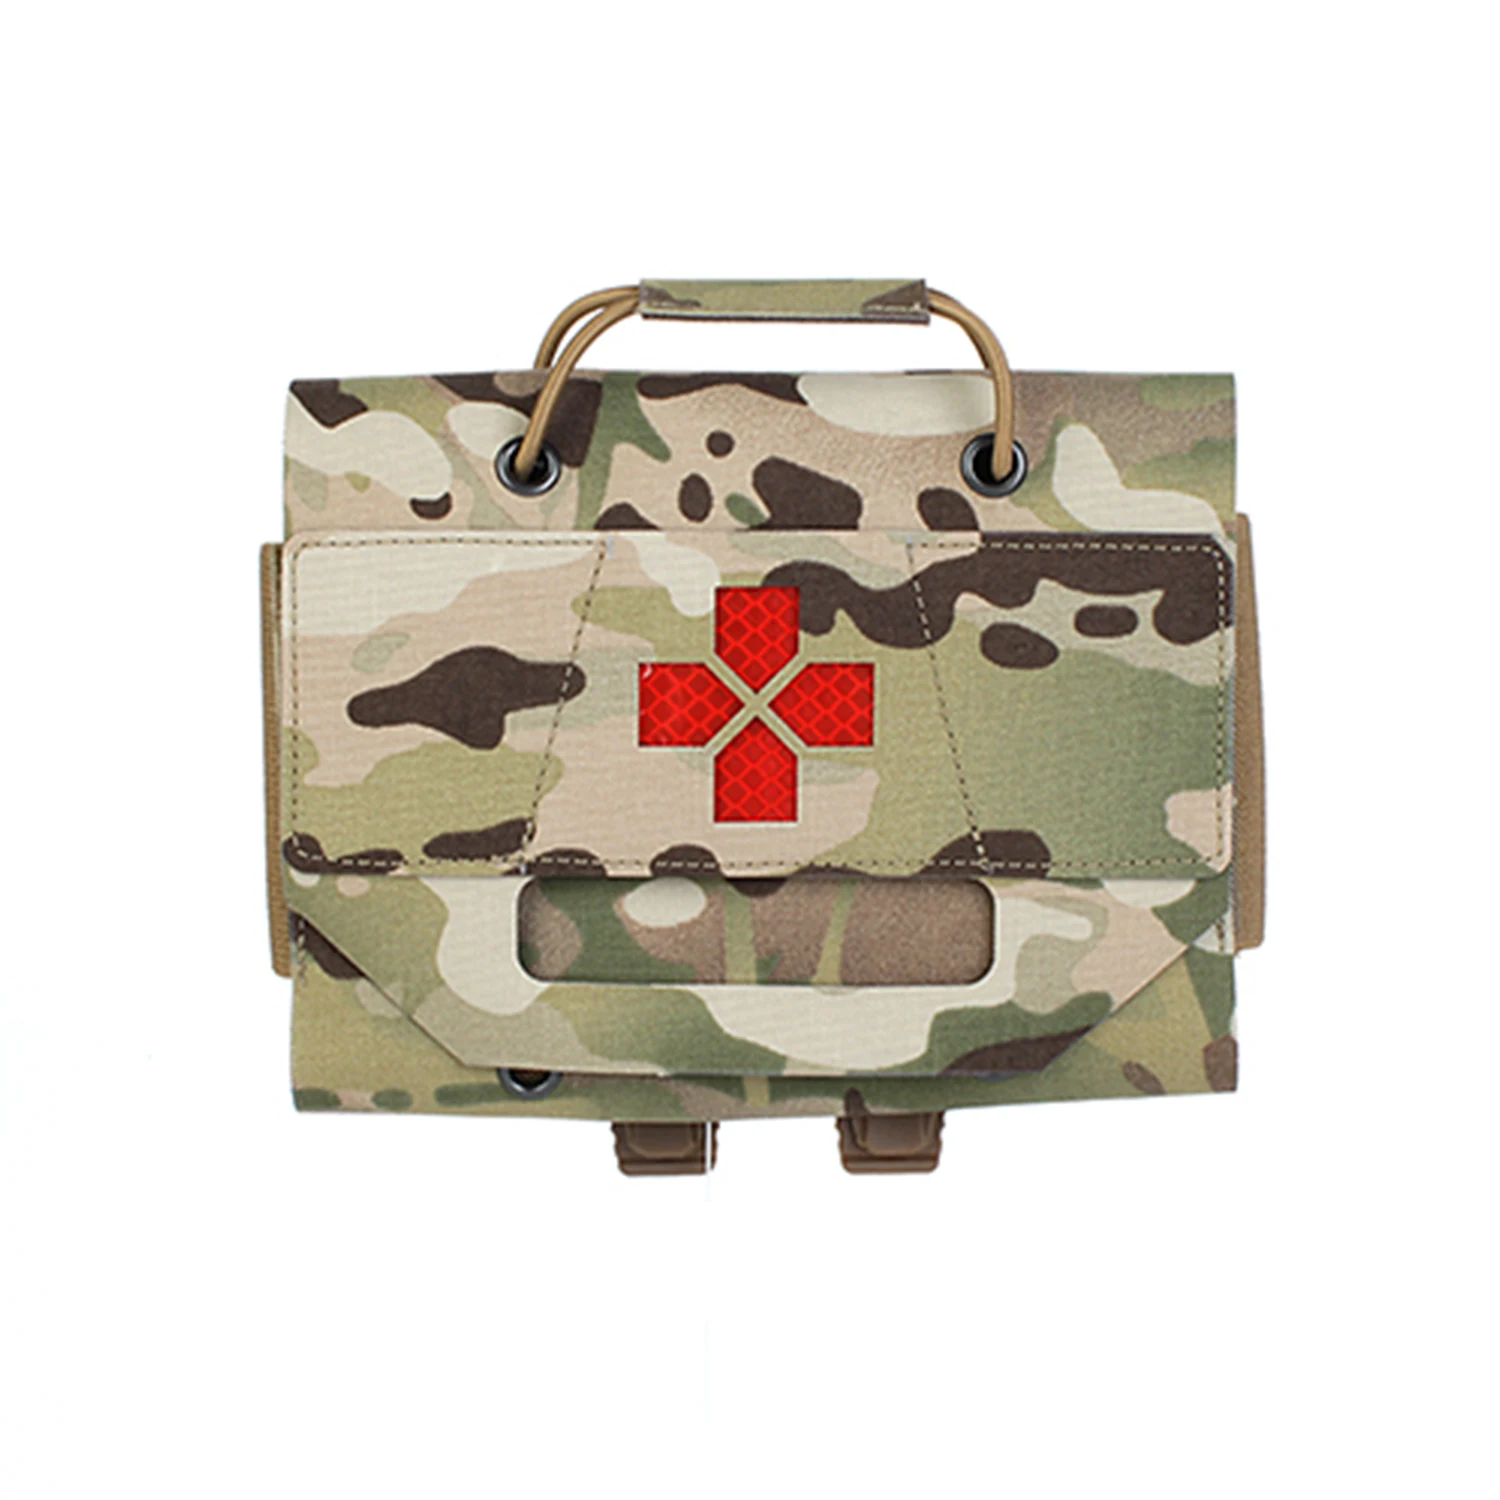 PEWTAC MMP minimalista cache kit médico portátil tactical vest acessórios kit de primeiros socorros, homens e mulheres, jogos de guerra, caça exterior Imagem 1